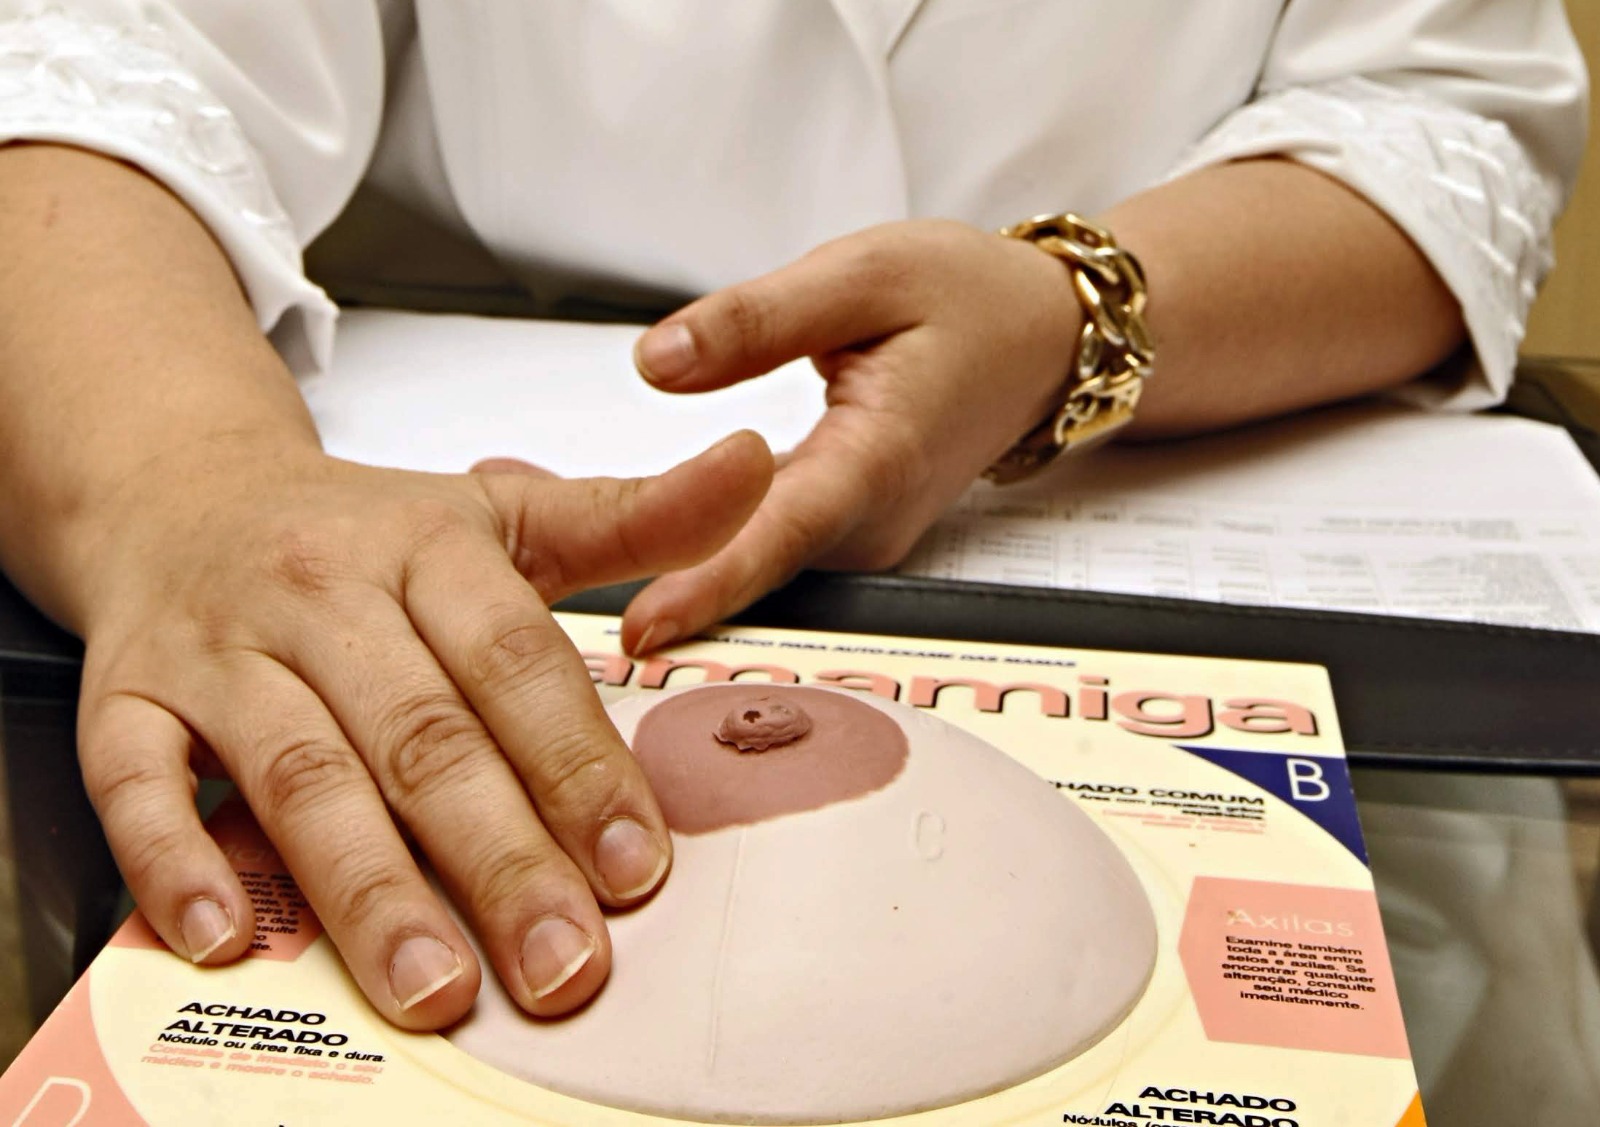 Parlamentar cobra prefeitura sobre filas de espera para a realização de cirurgias de redução de mama